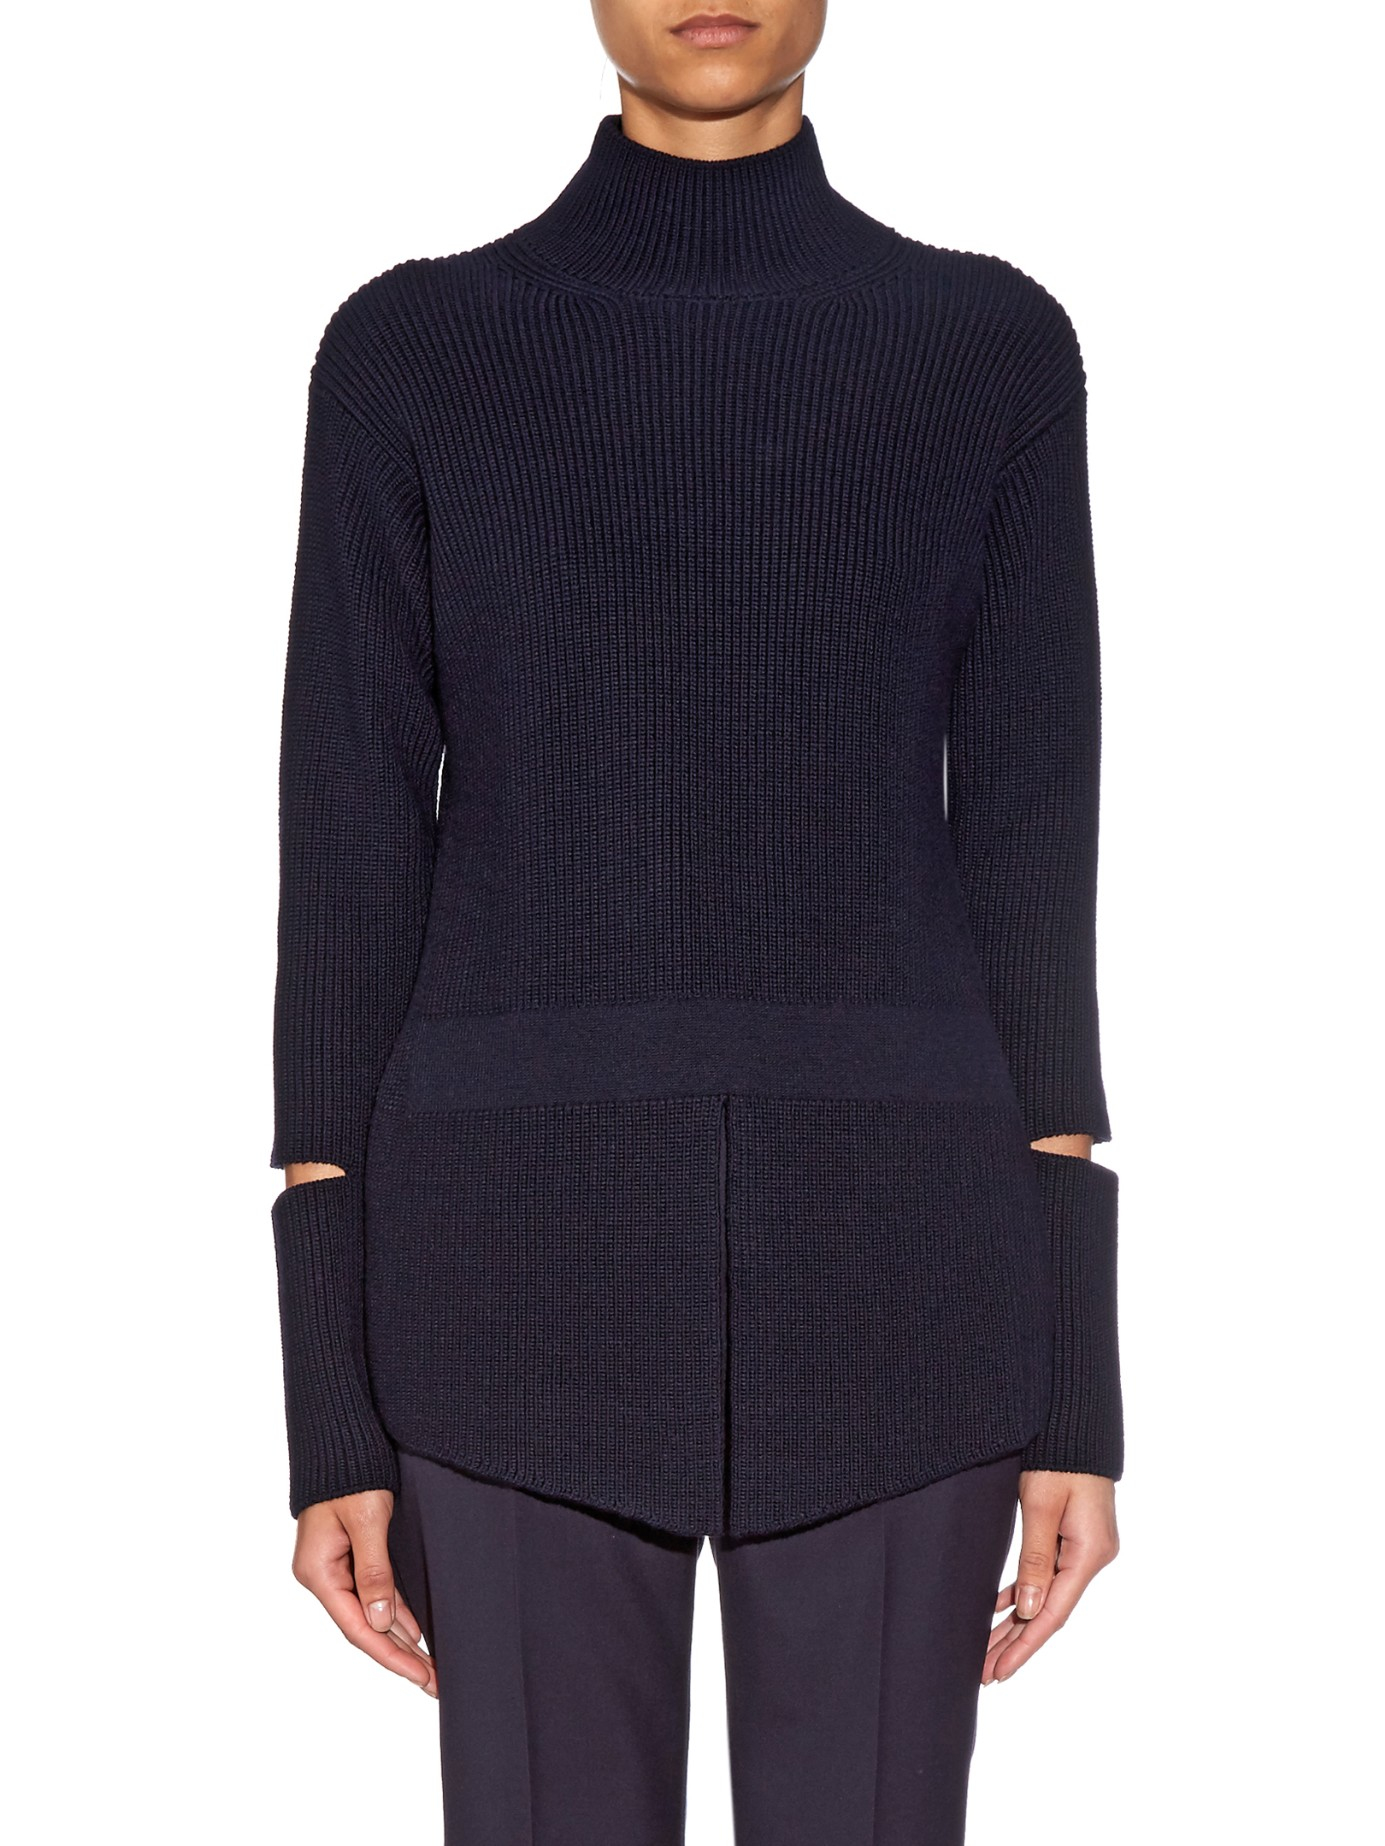 Stella McCartney Cut-out Sleeve Wool-knit Sweater in Navy (Blue) - Lyst